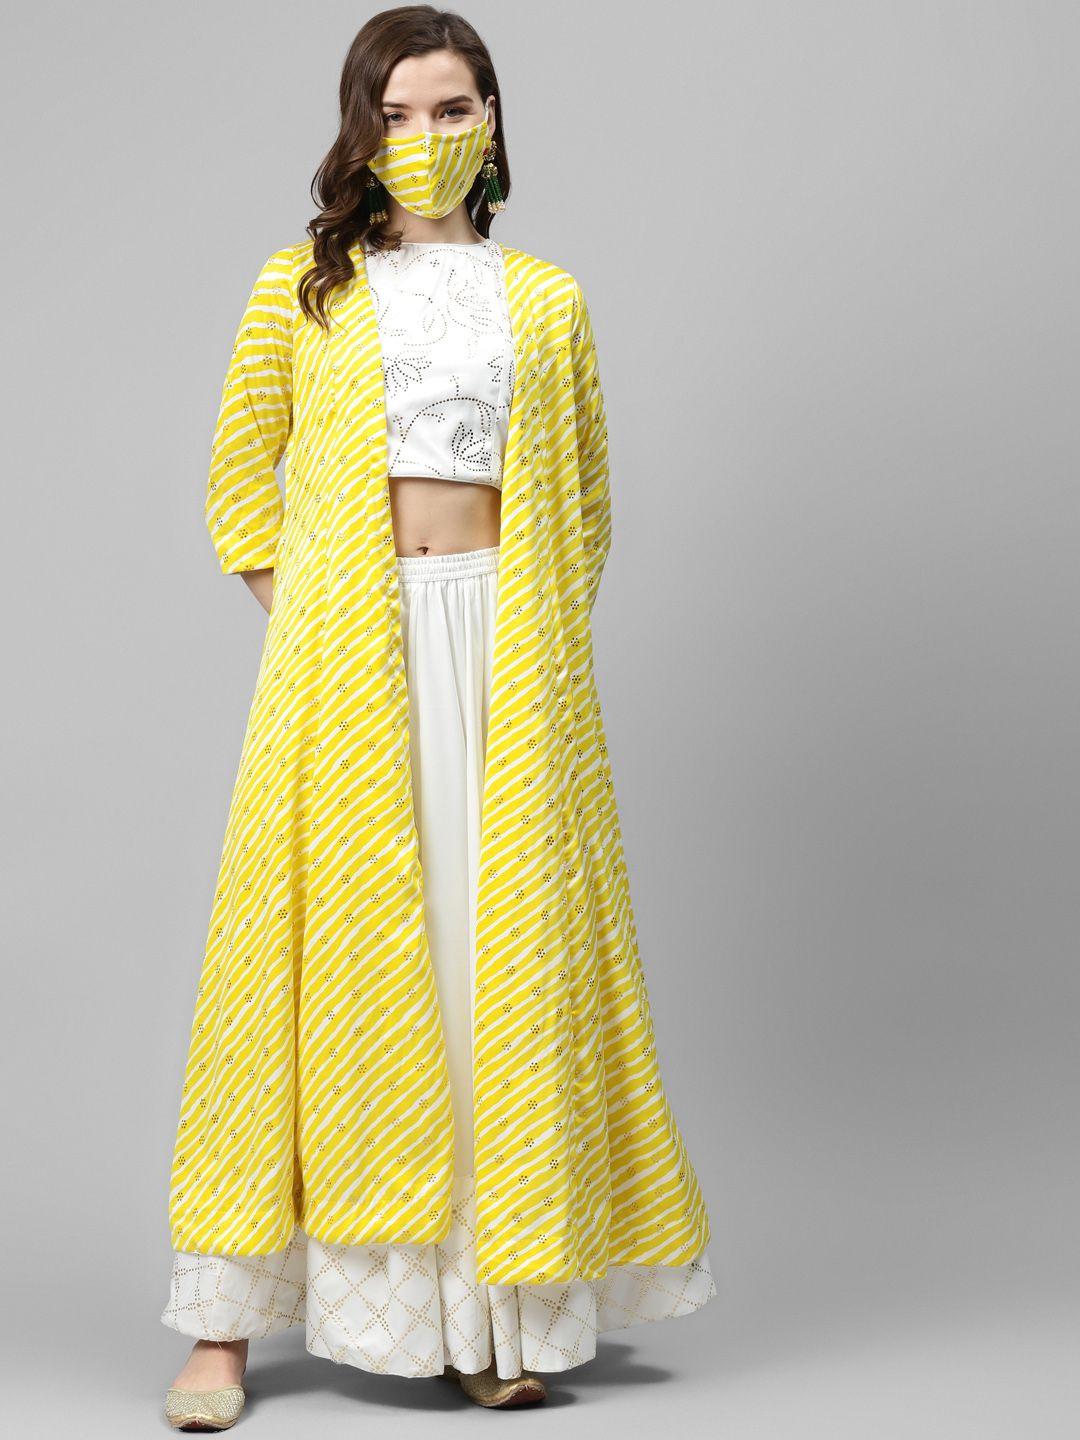 biba women white & yellow embellished top with skirt & ethnic jacket